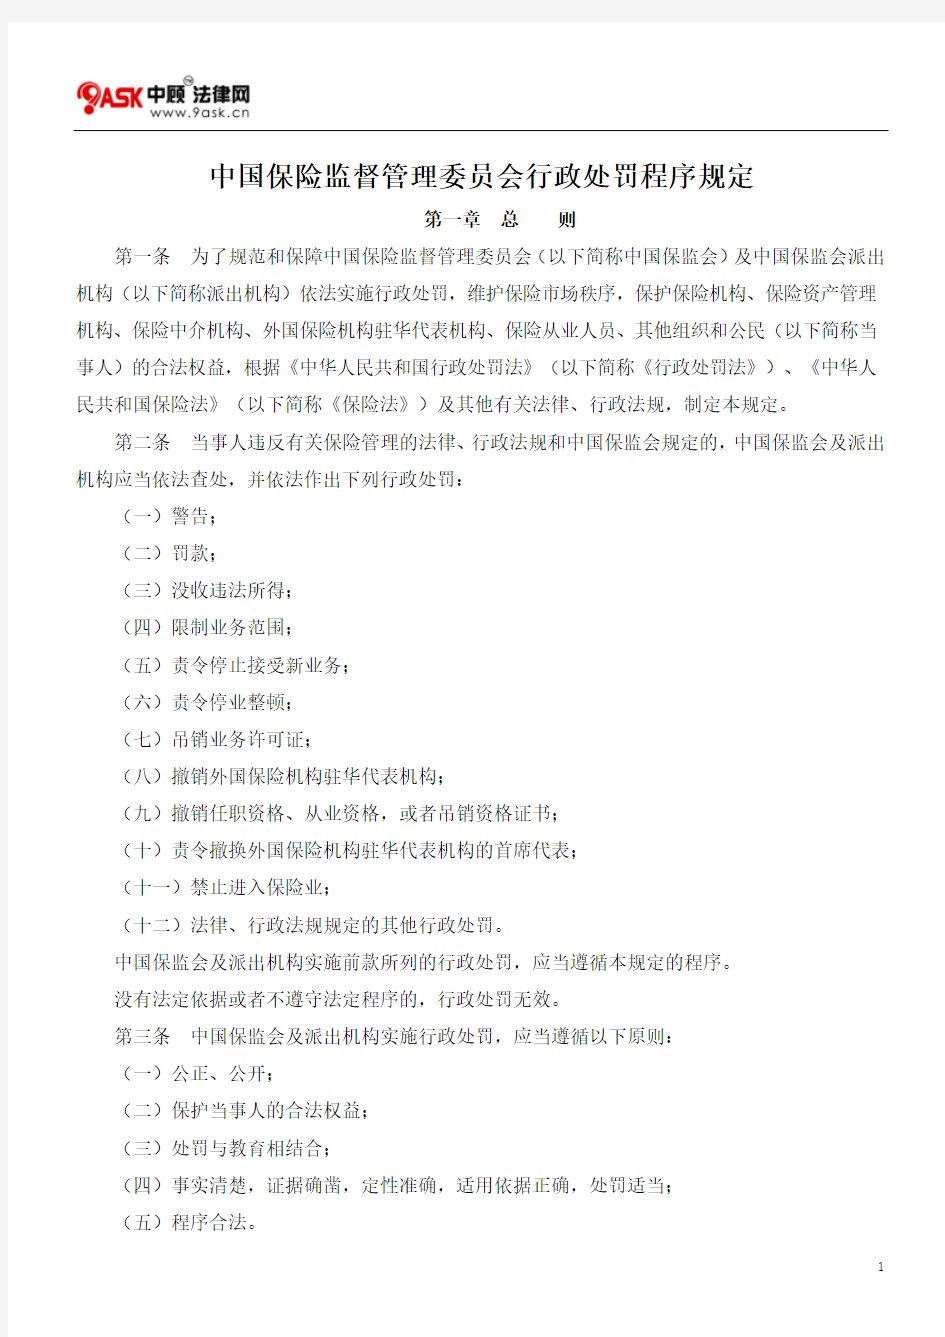 中国保险监督管理委员会行政处罚程序规定